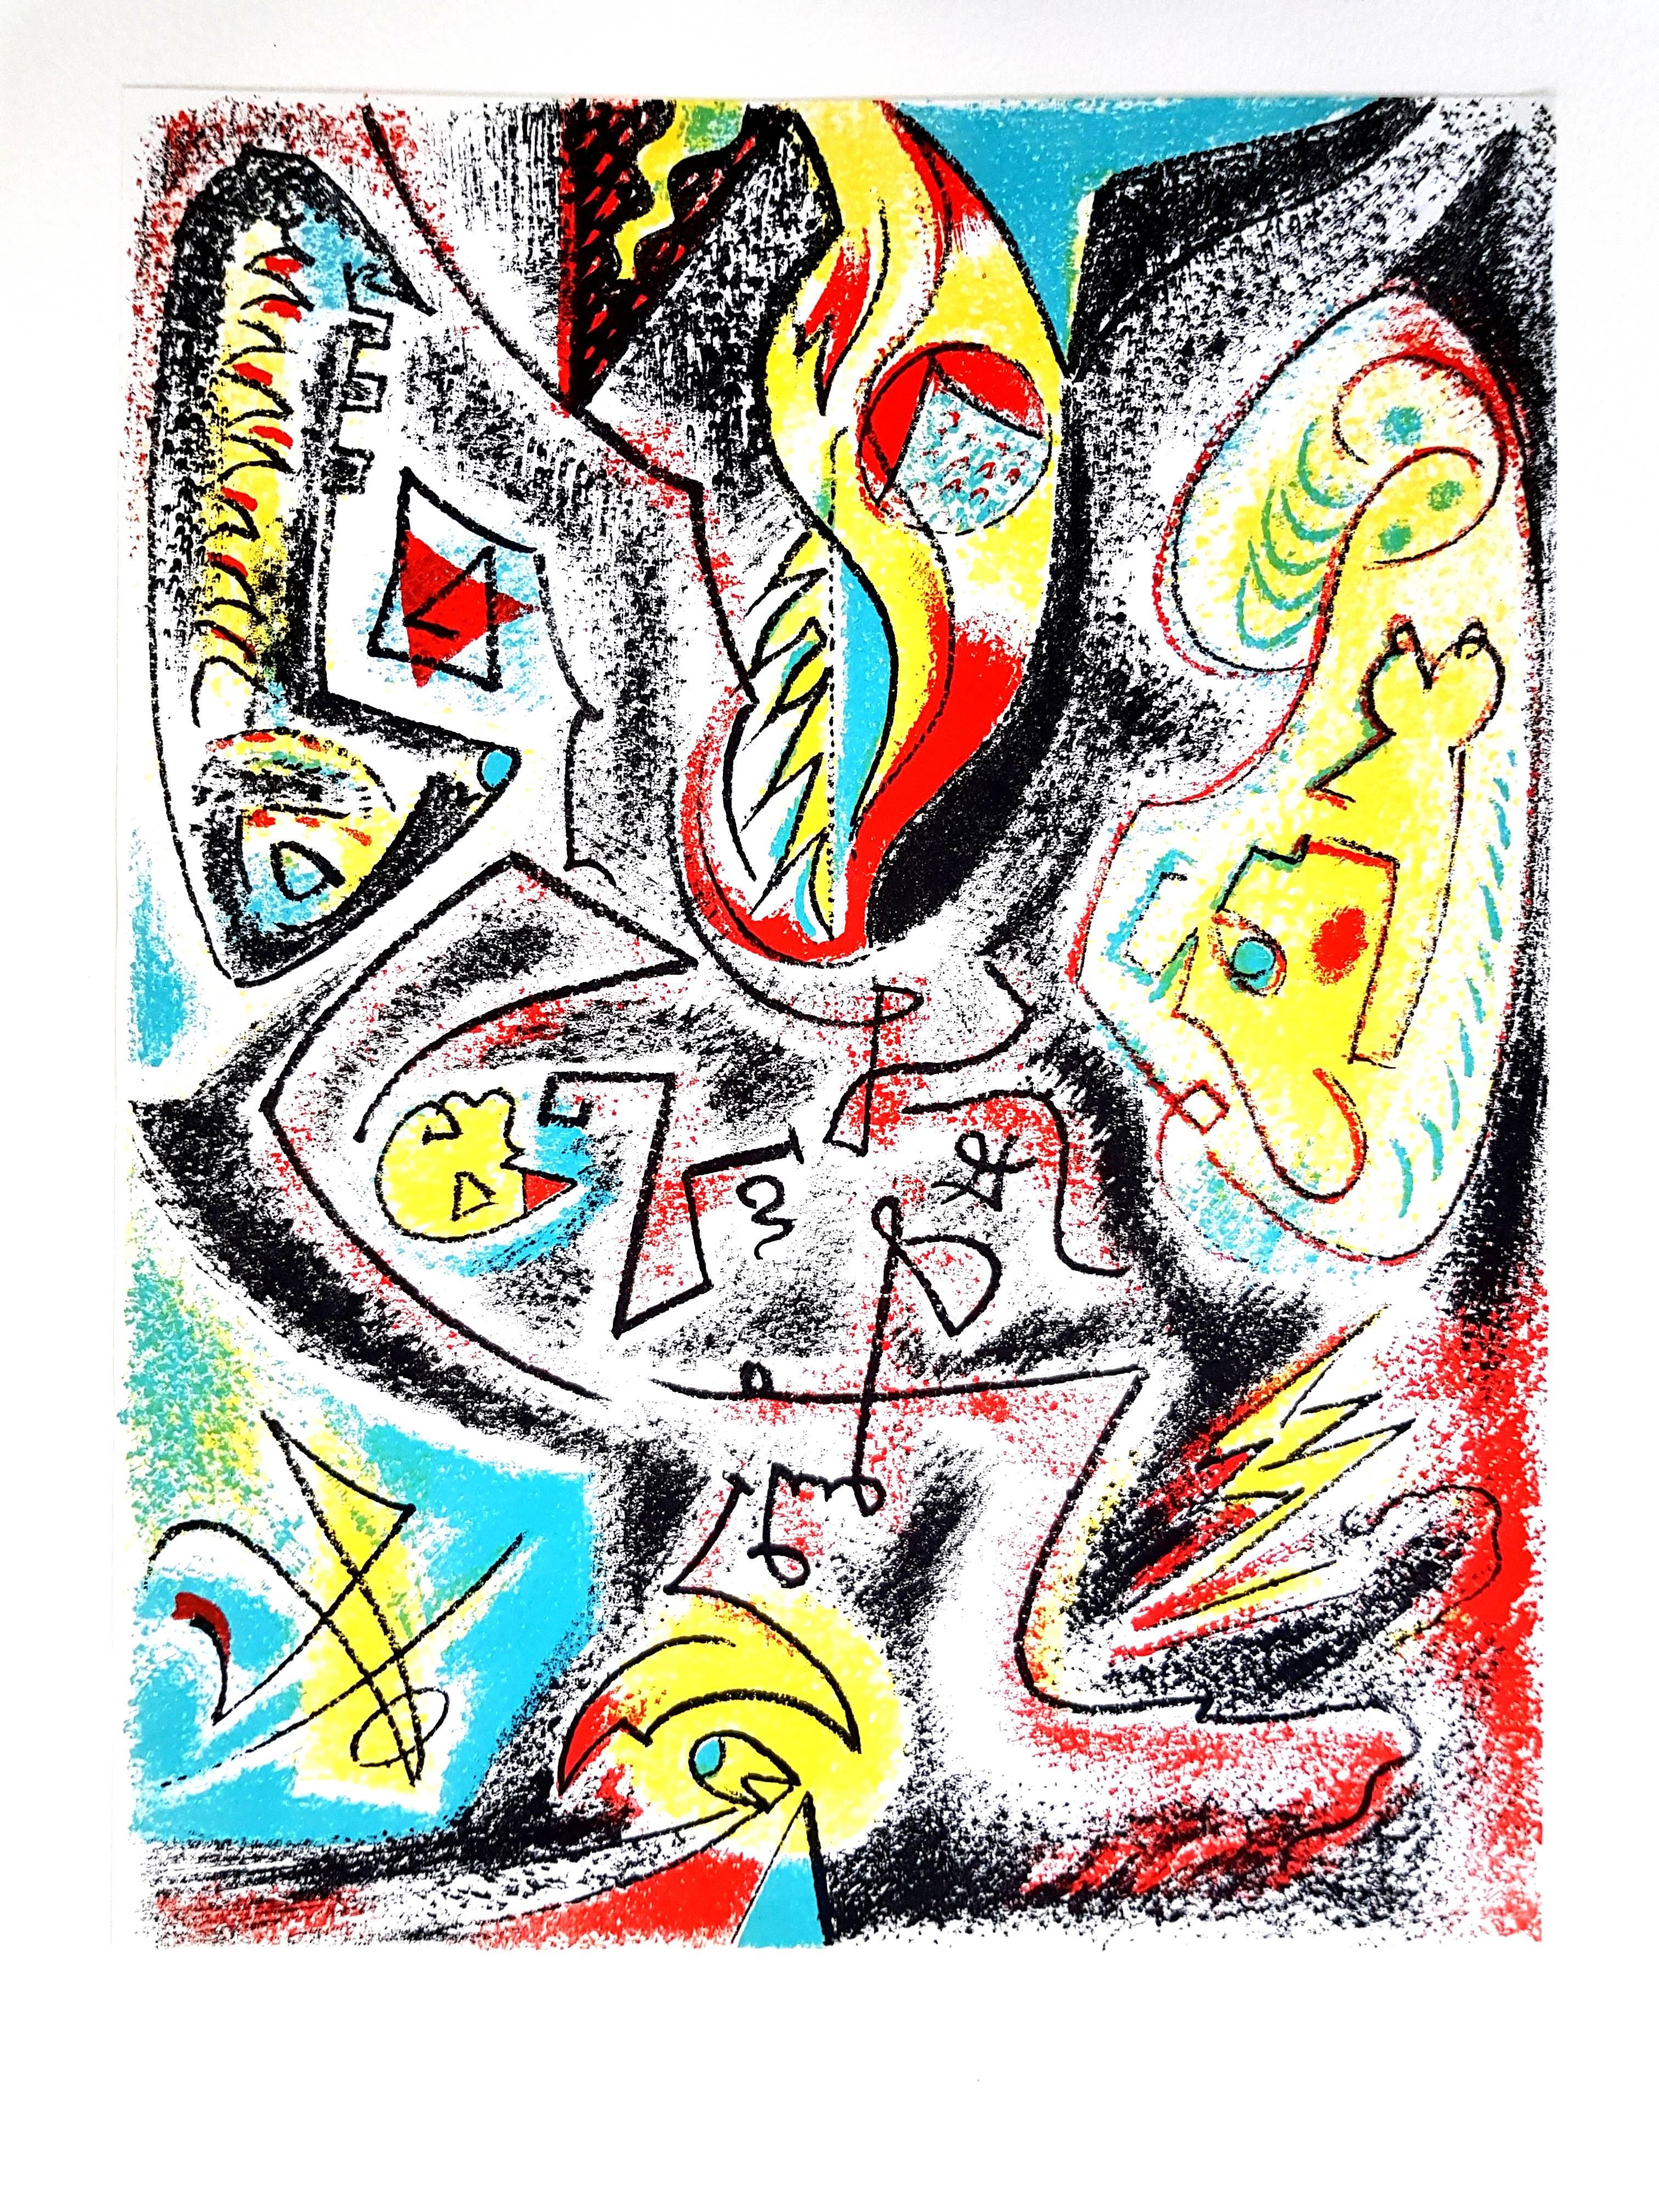 André Masson - Komposition 
Original-Lithographie
1969
Abmessungen: 32 x 25 cm
Revue XXe Siècle 
Cahiers d'art, veröffentlicht unter der Leitung von G. di San Lazzaro.

Französischer Maler, geboren in Culan, Cher. Gegen den Widerstand seines Vaters